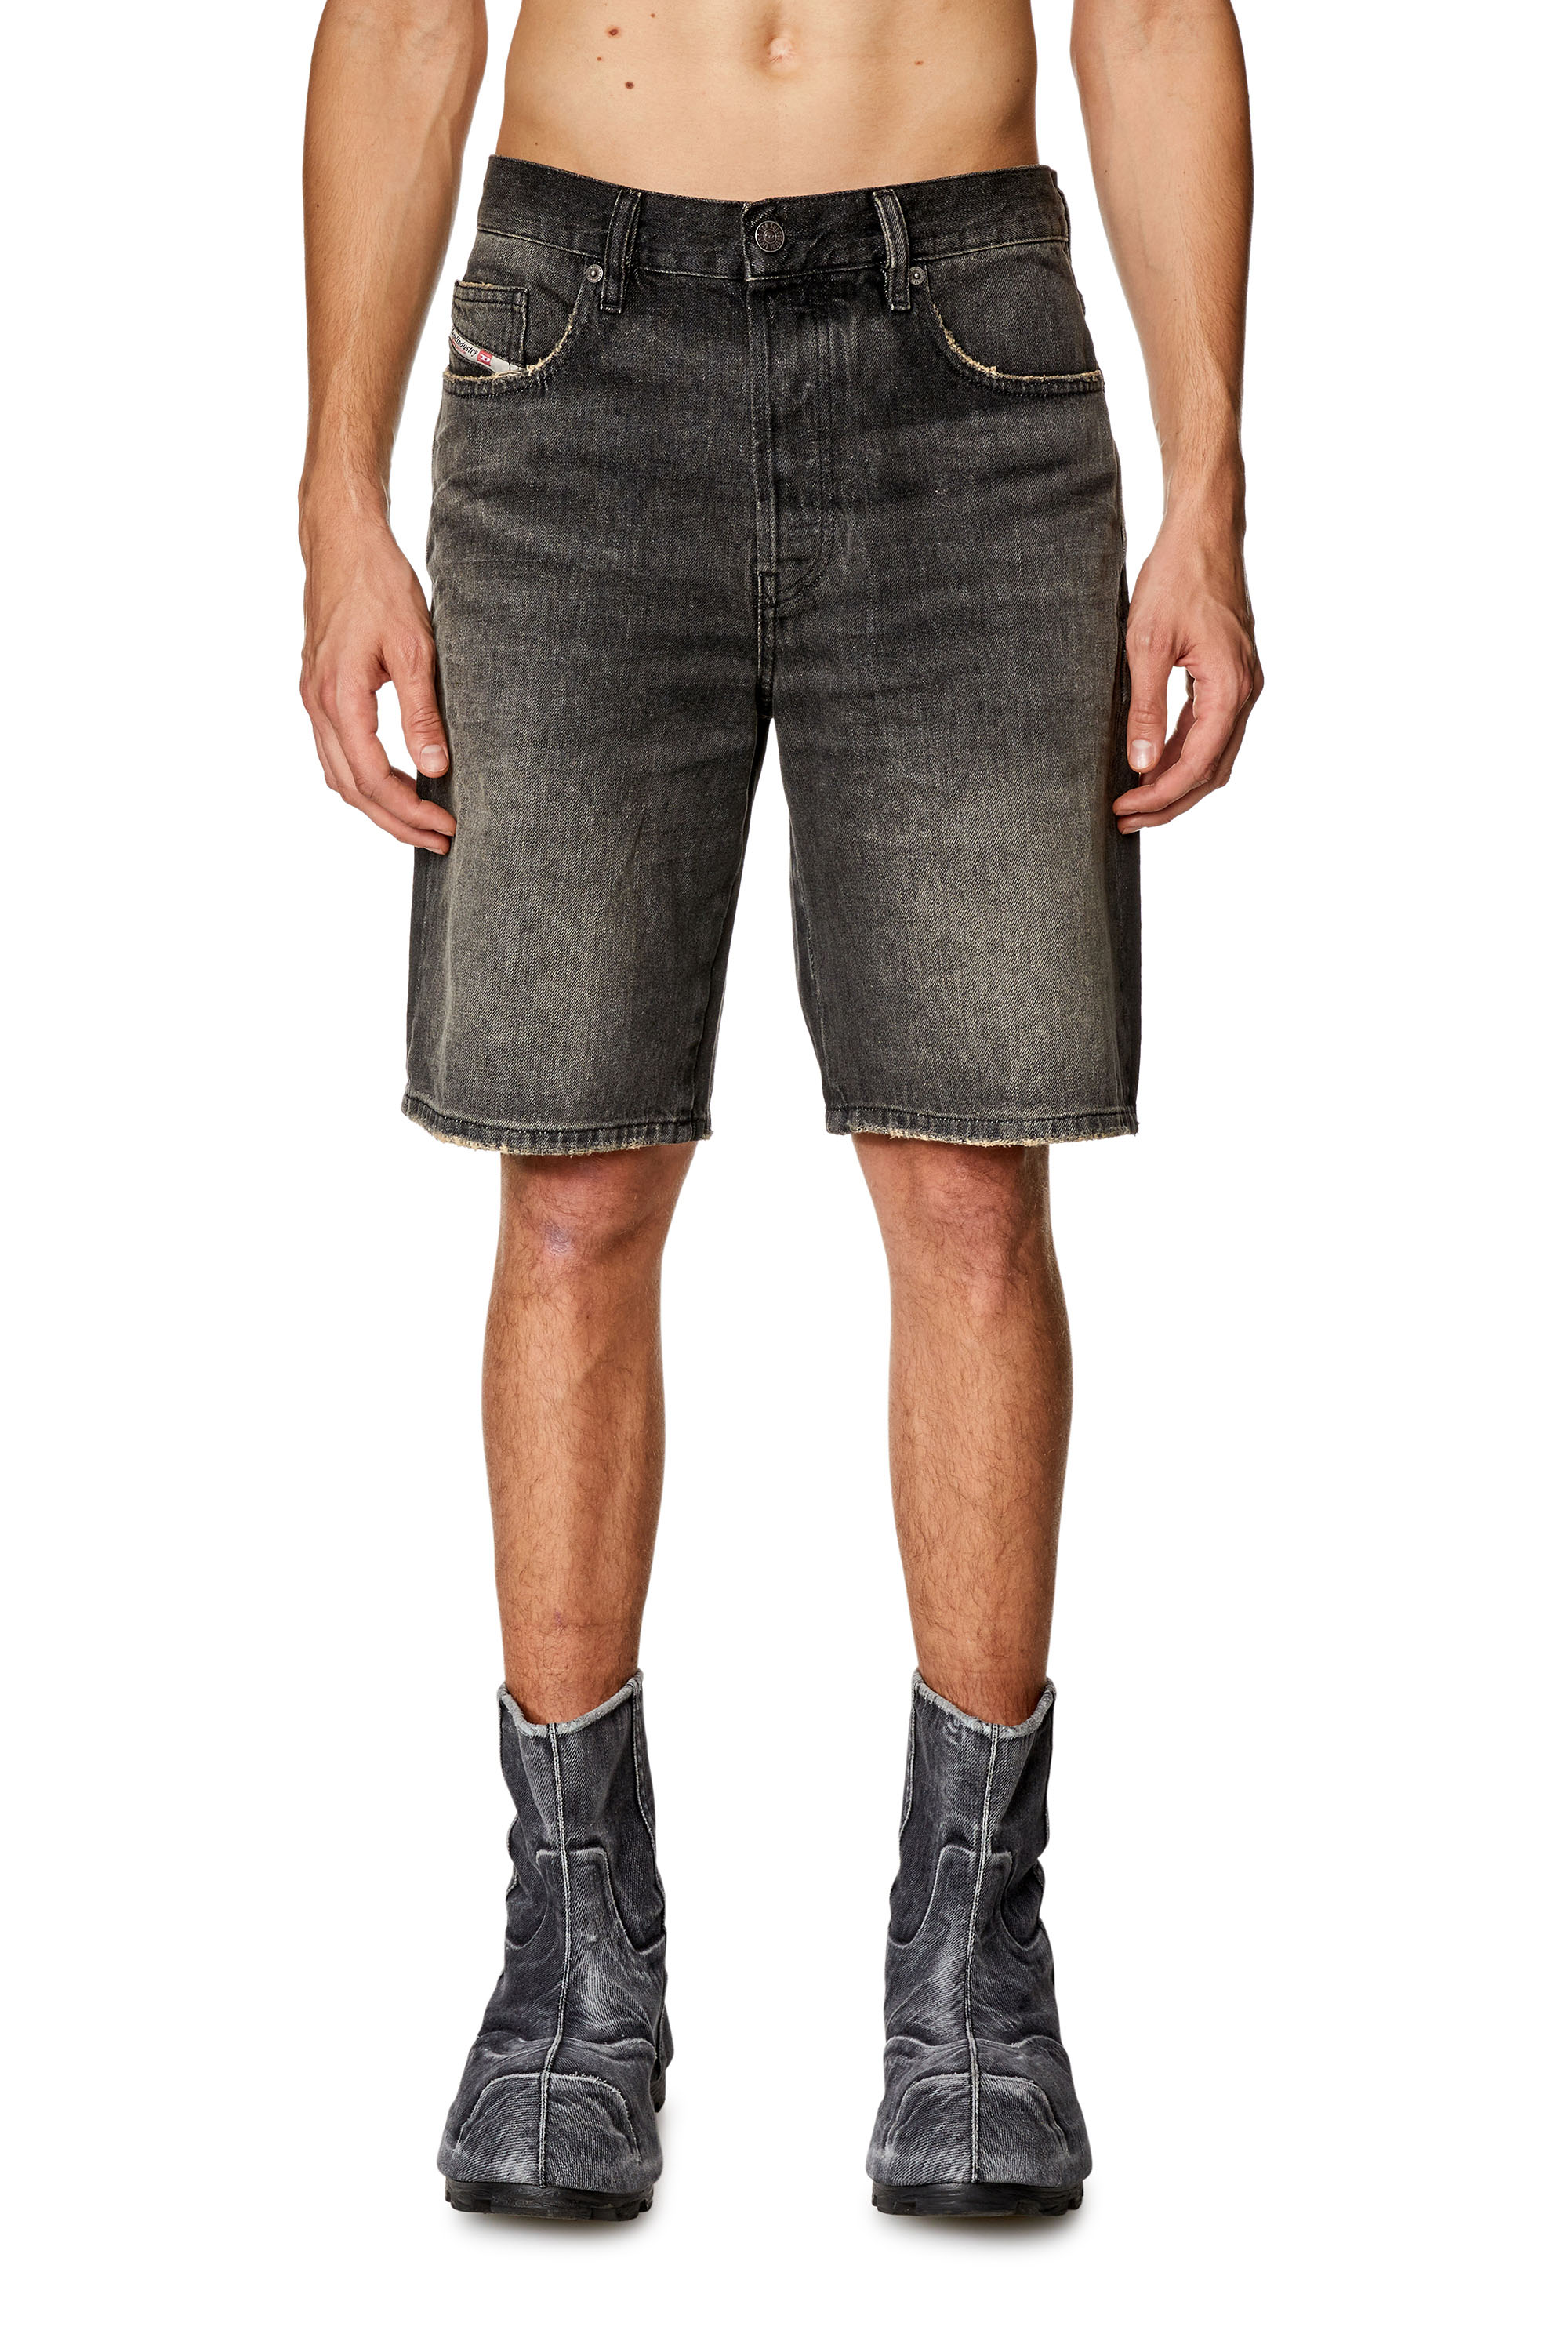 Diesel - Pantalones cortos en denim - Shorts - Hombre - Negro